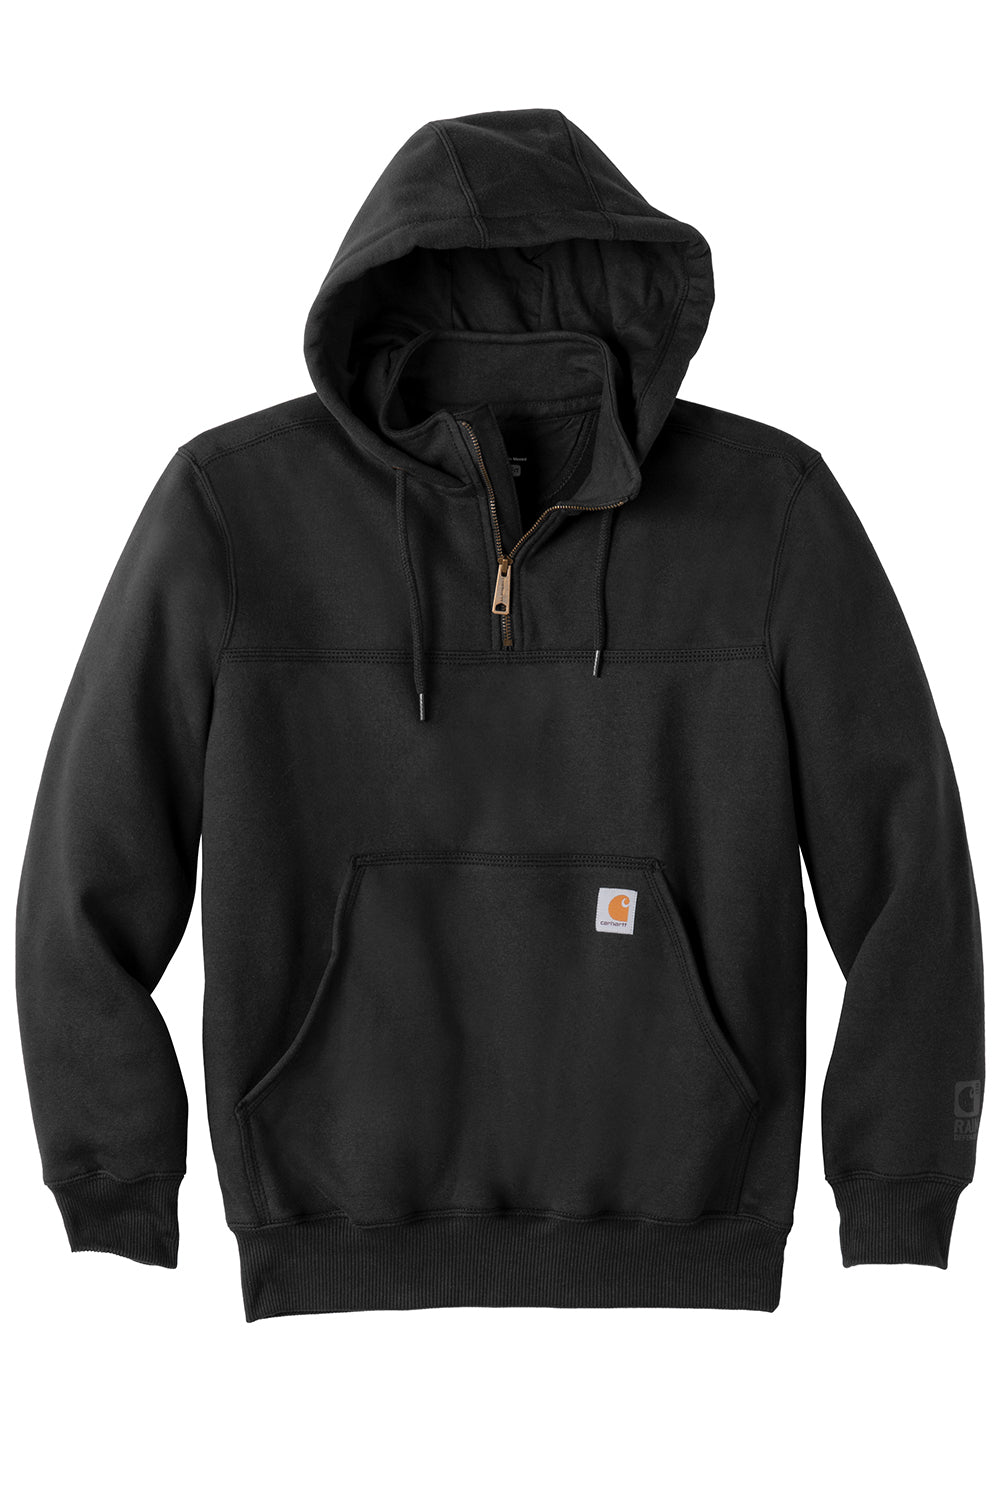 Carhartt CT100617 Mens Paxton Rain Defender Water Resistant 1/4 Zip Hooded Sweatshirt Hoodie Black Flat Front